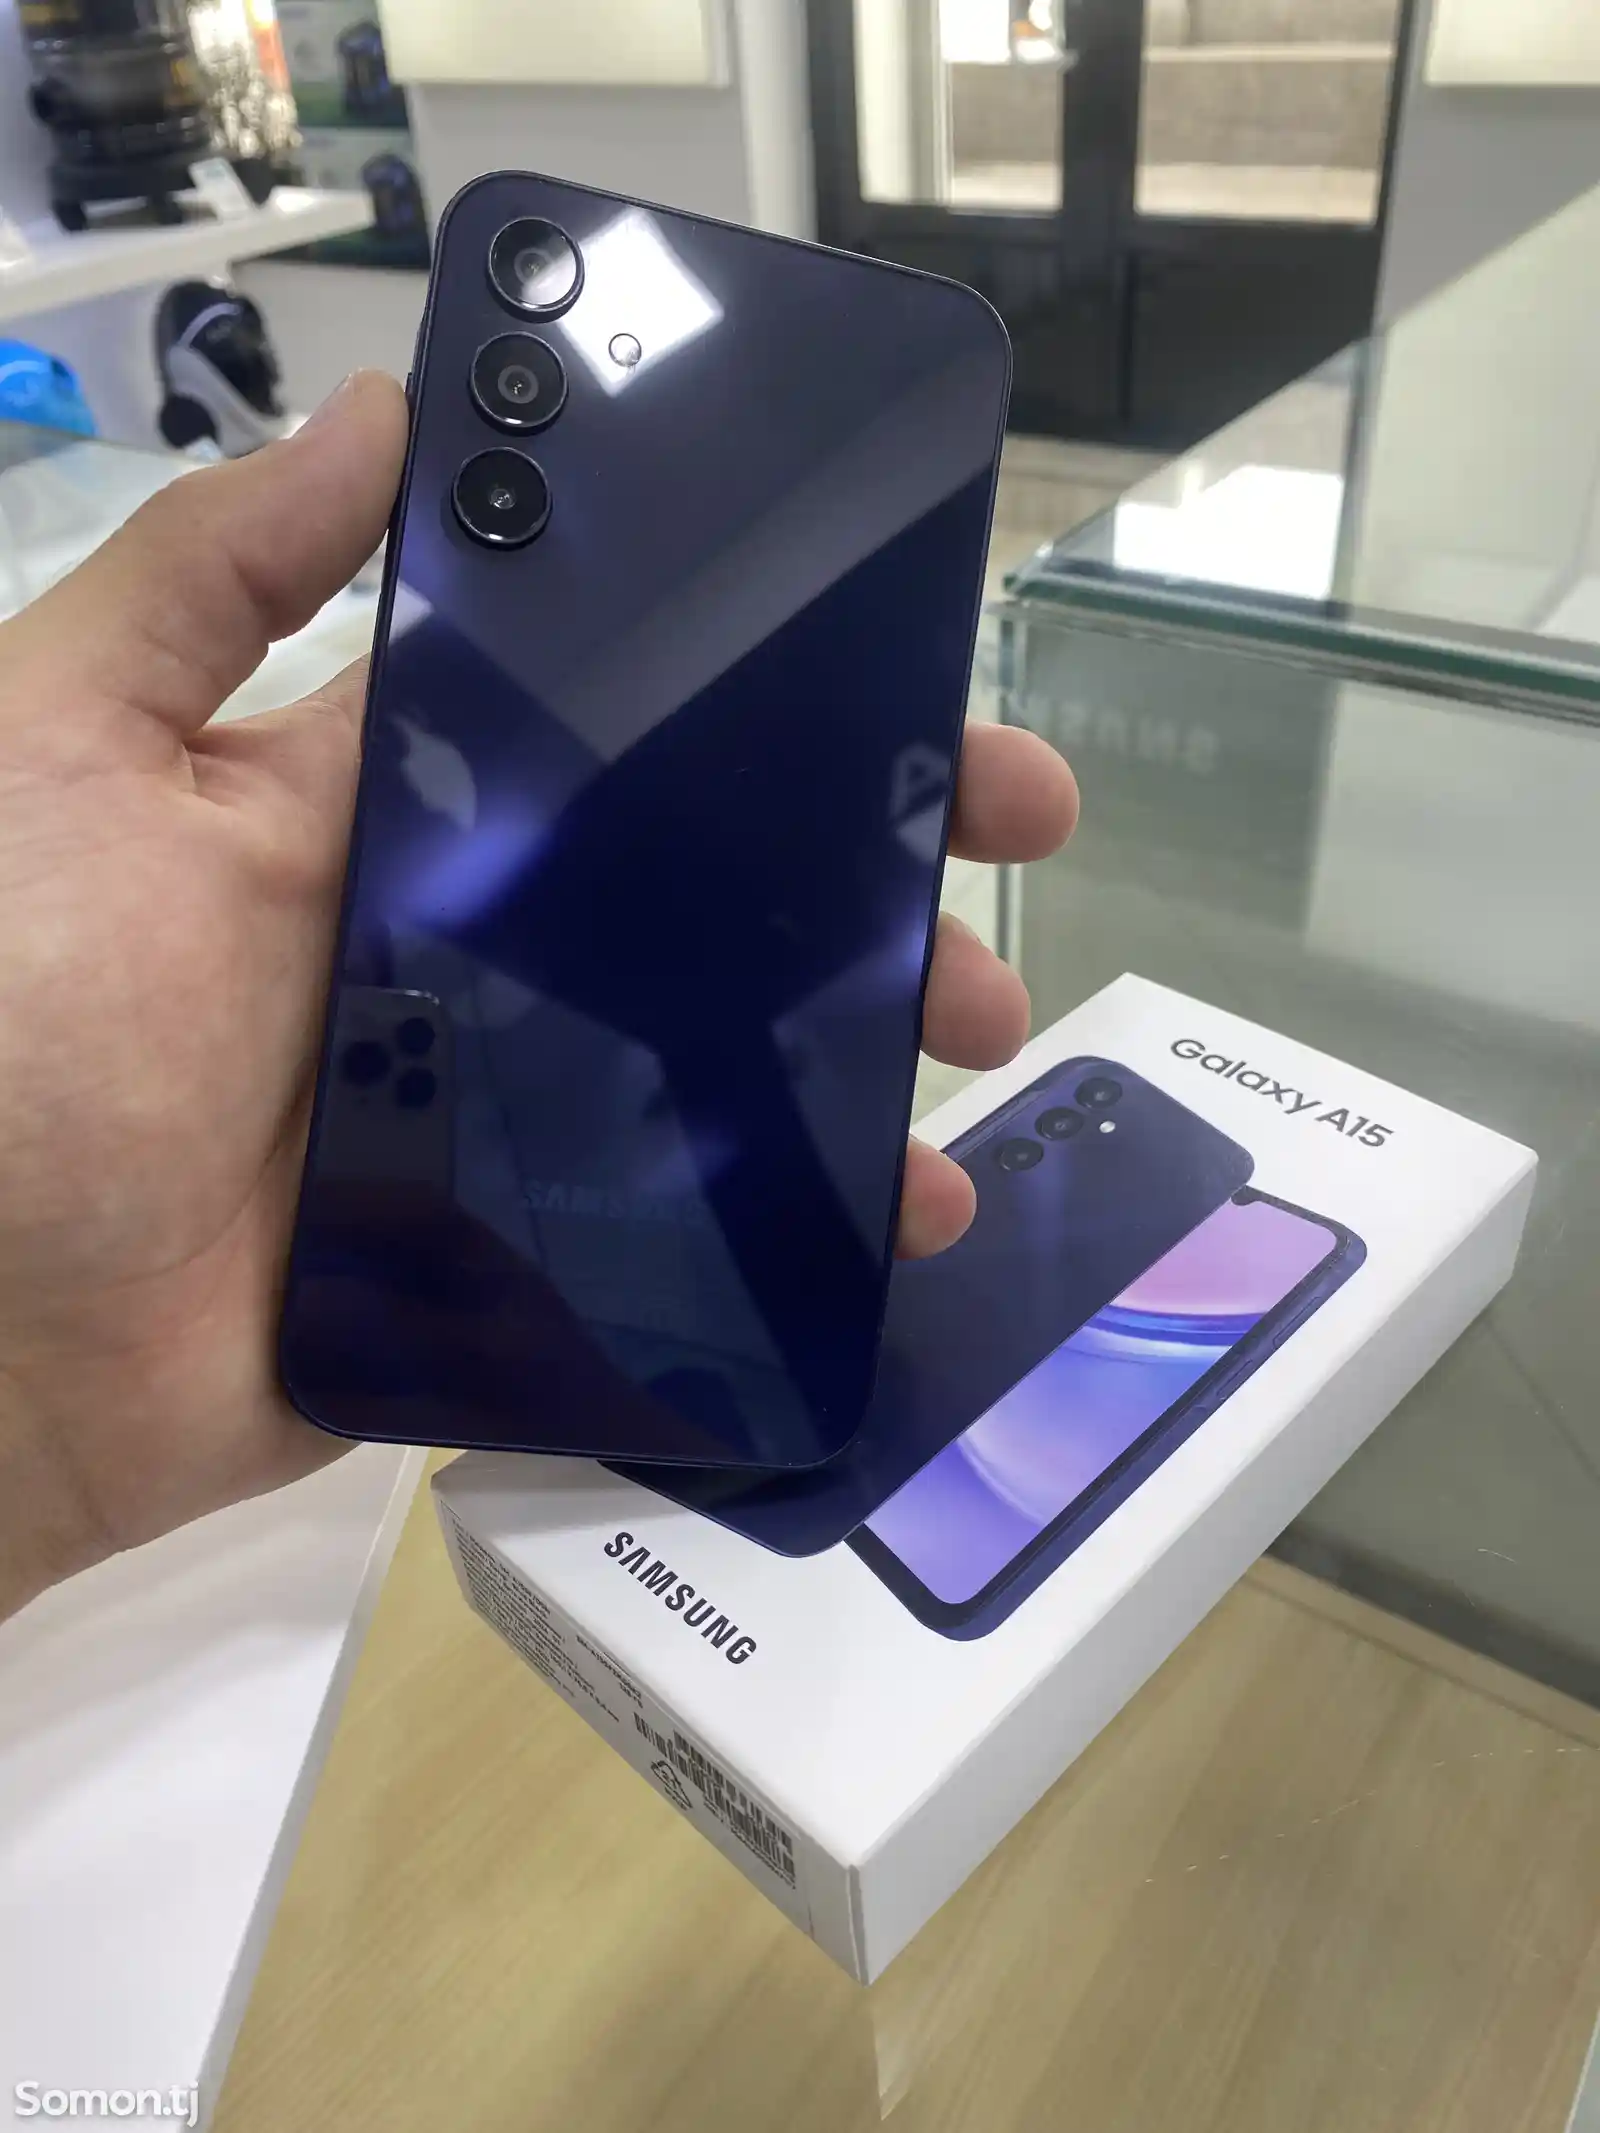 Samsung Galaxy A15-1